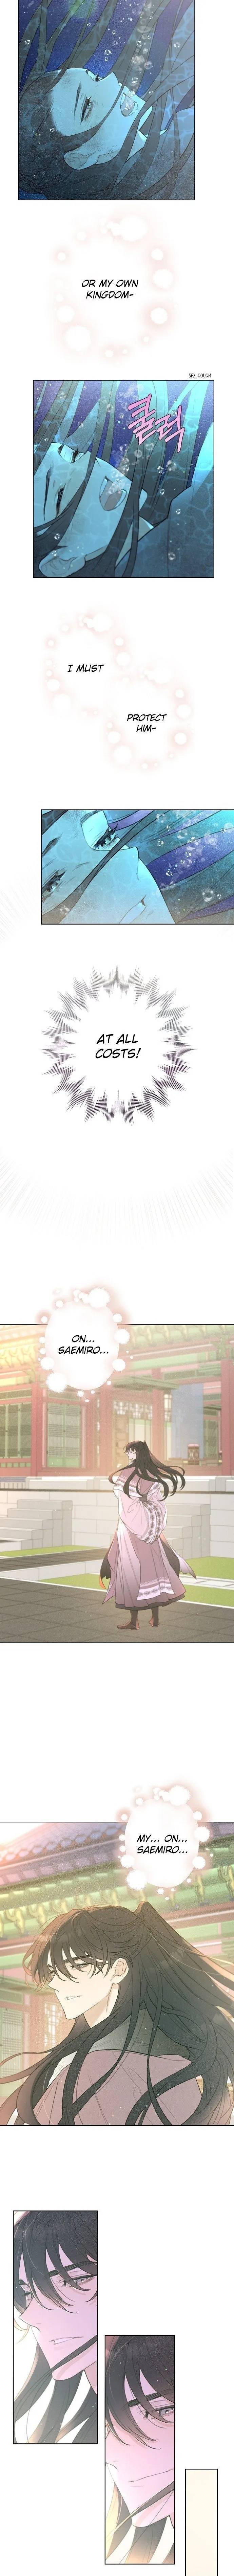 Onsaemiro - Chapter 0 Page 7